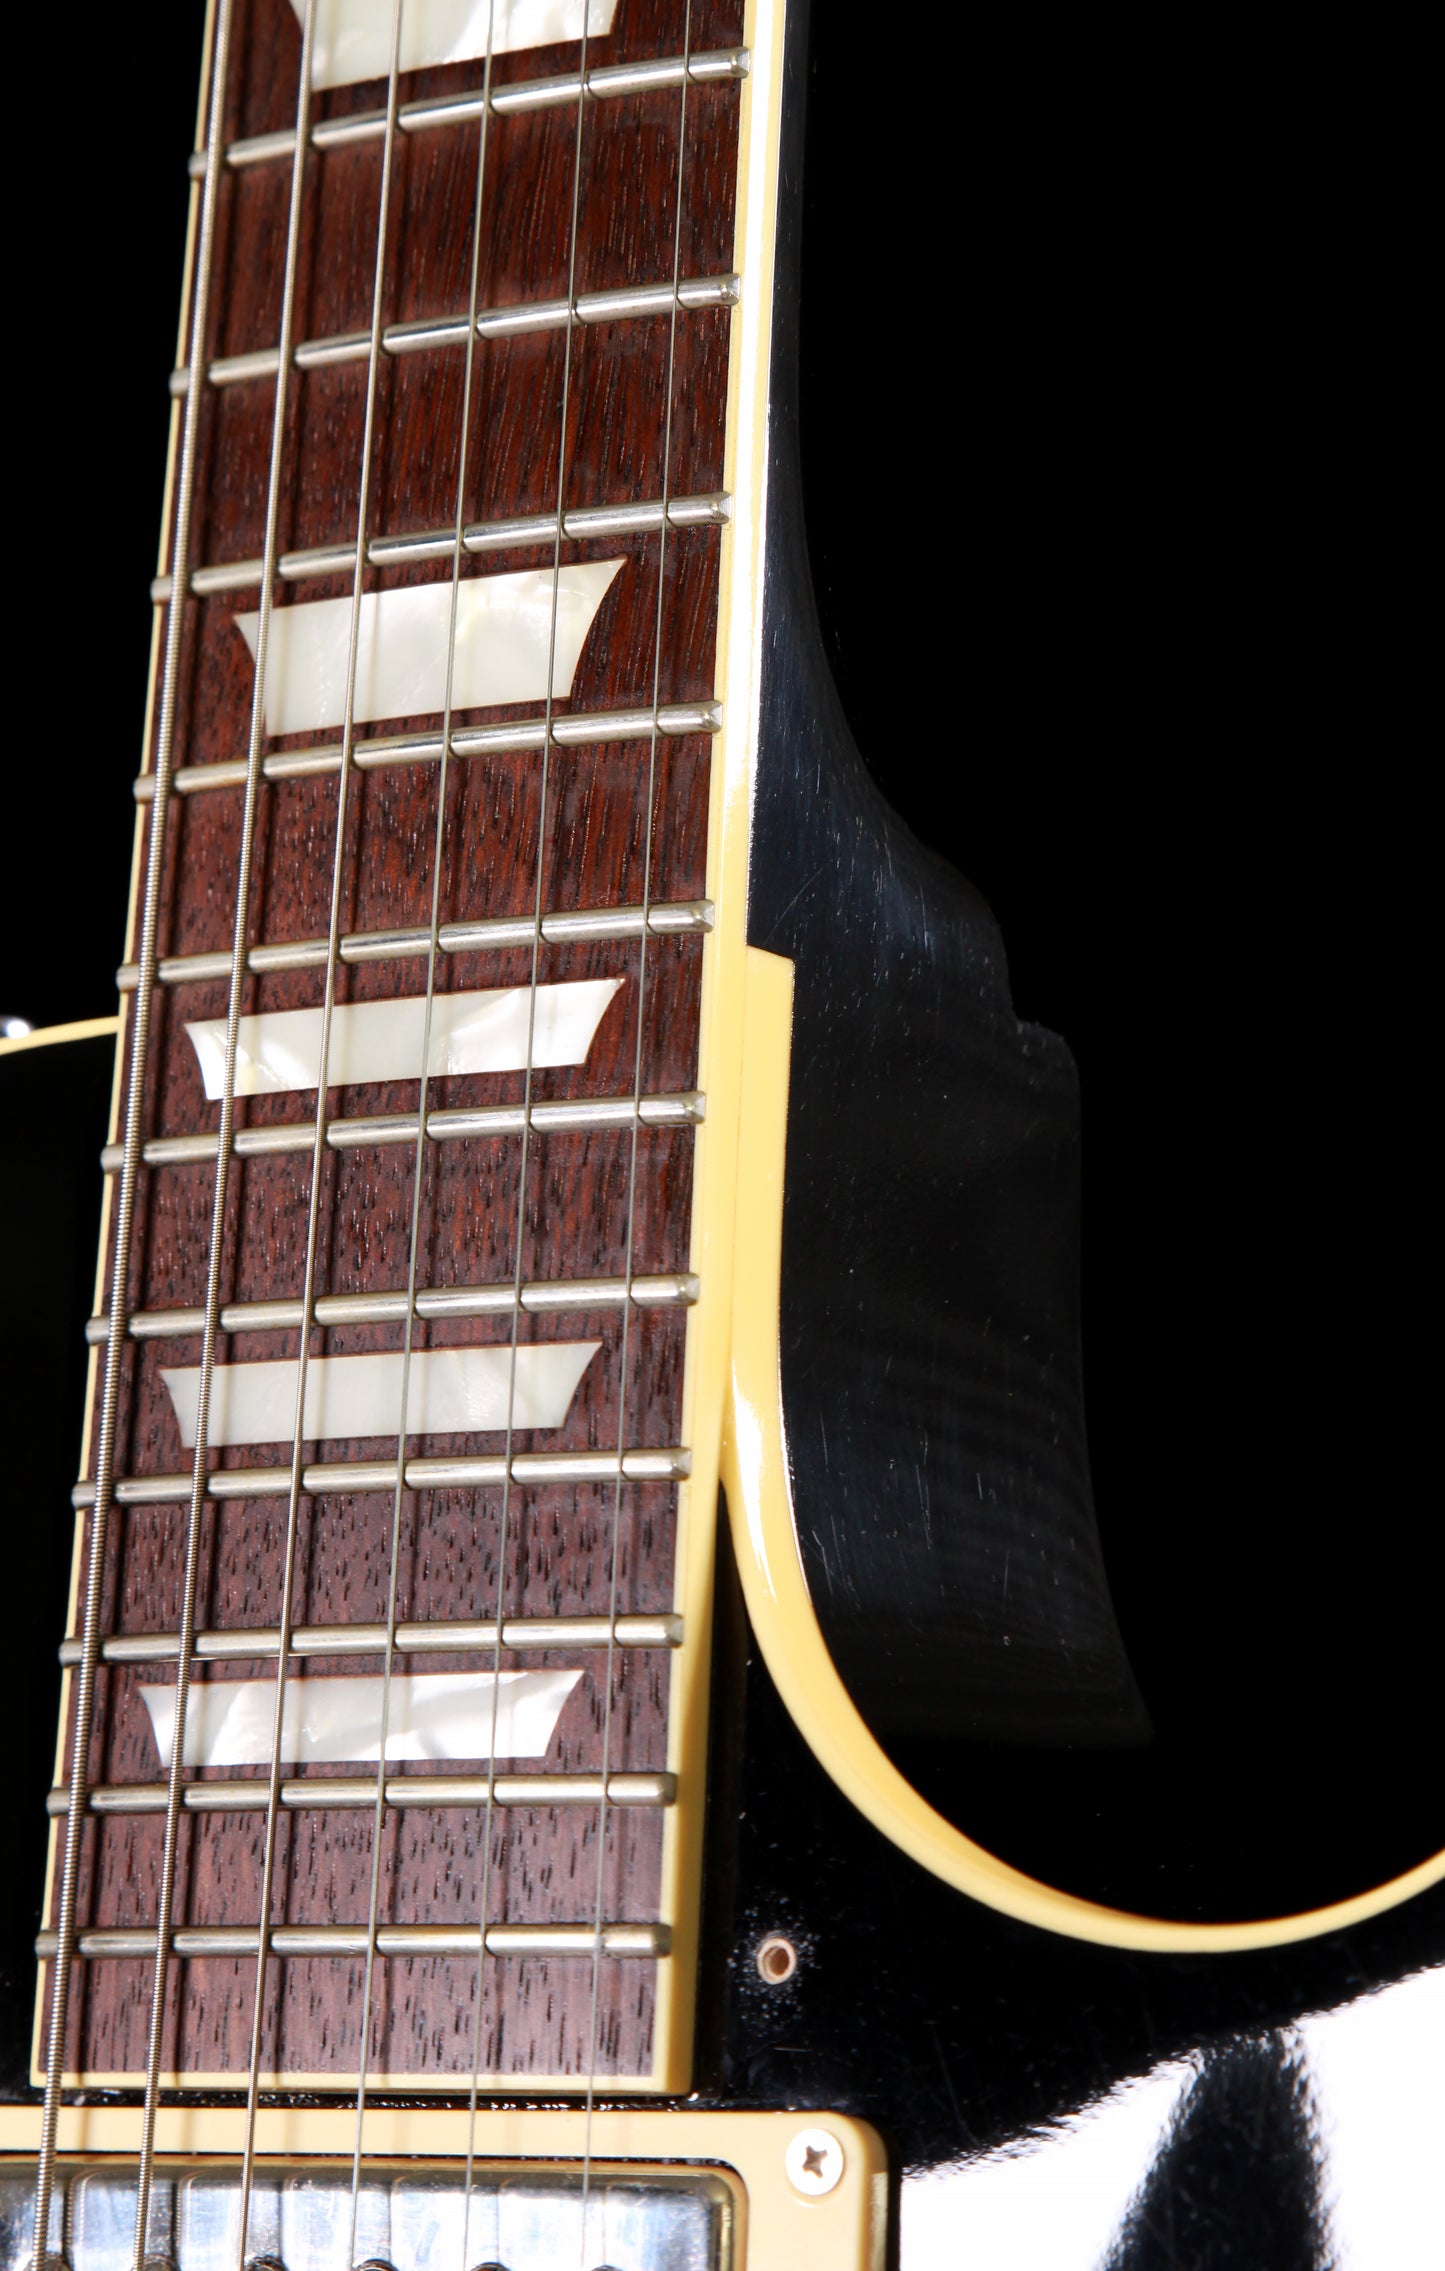 Crews Maniac Sound KTR-S Key To The Rock Standard Les Paul Ebony w/Gibson PAF Pickups